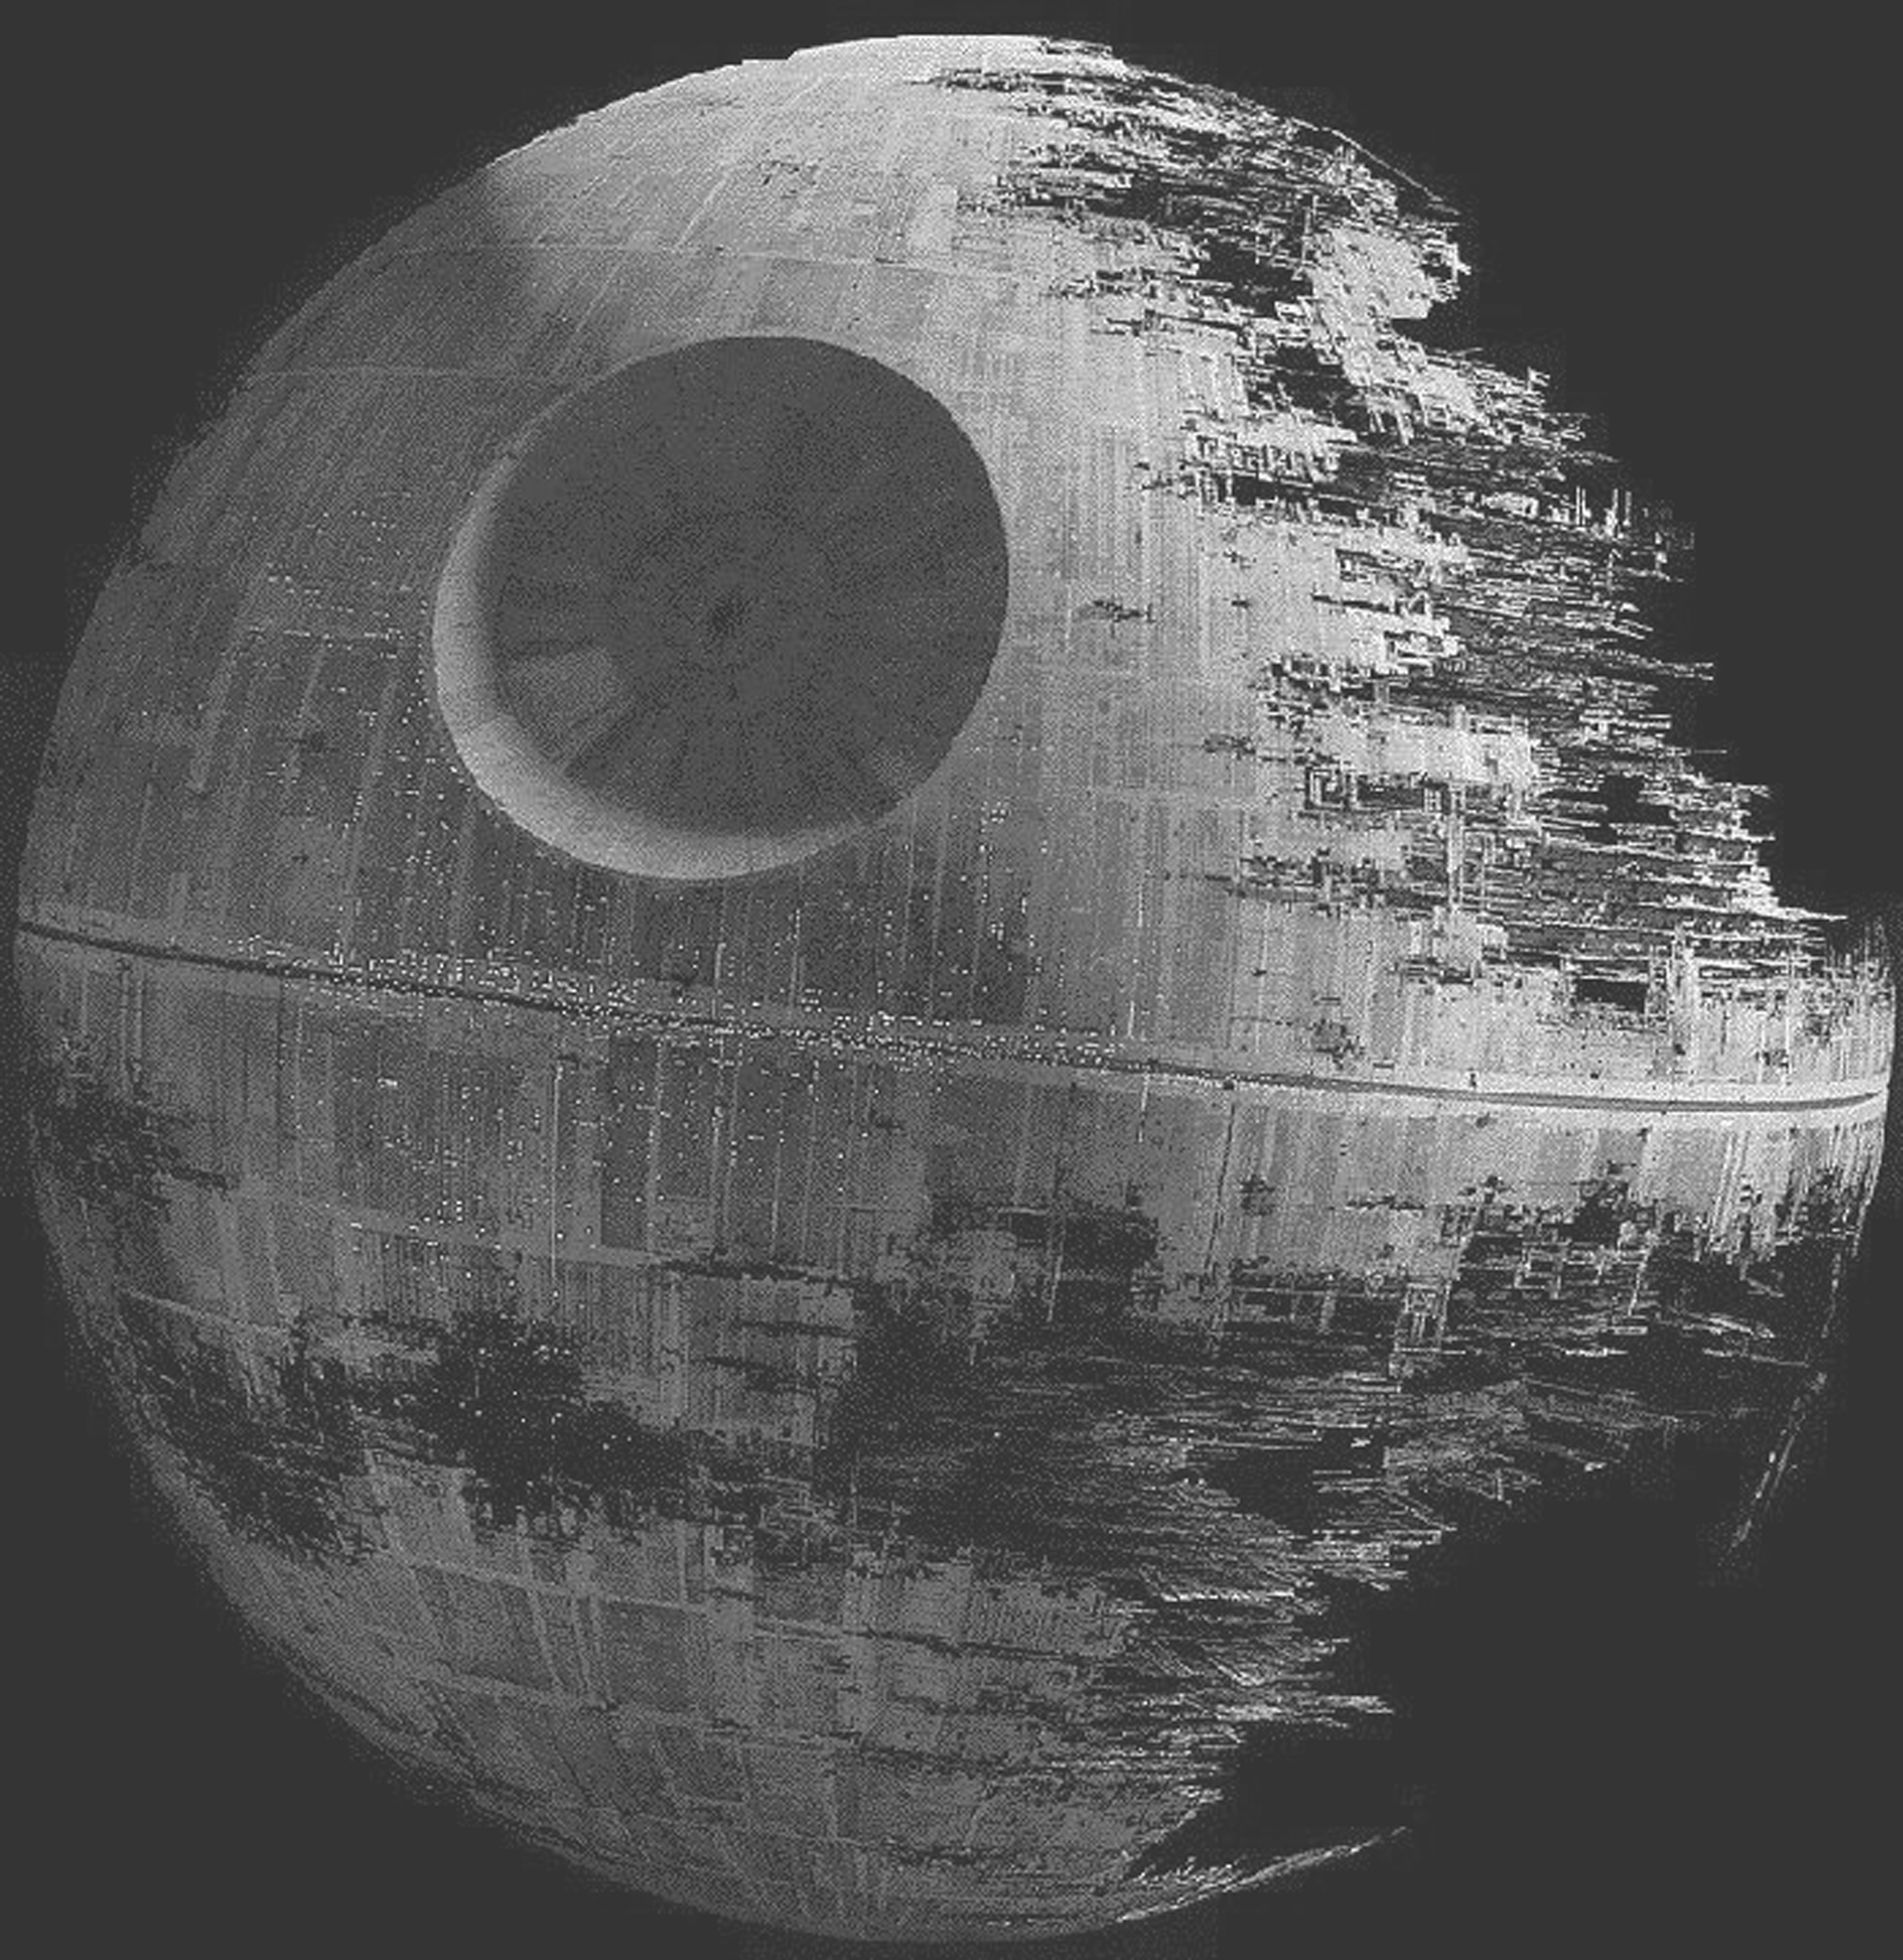 Death Star Star Wars 3 Movie Wallpaper Pics